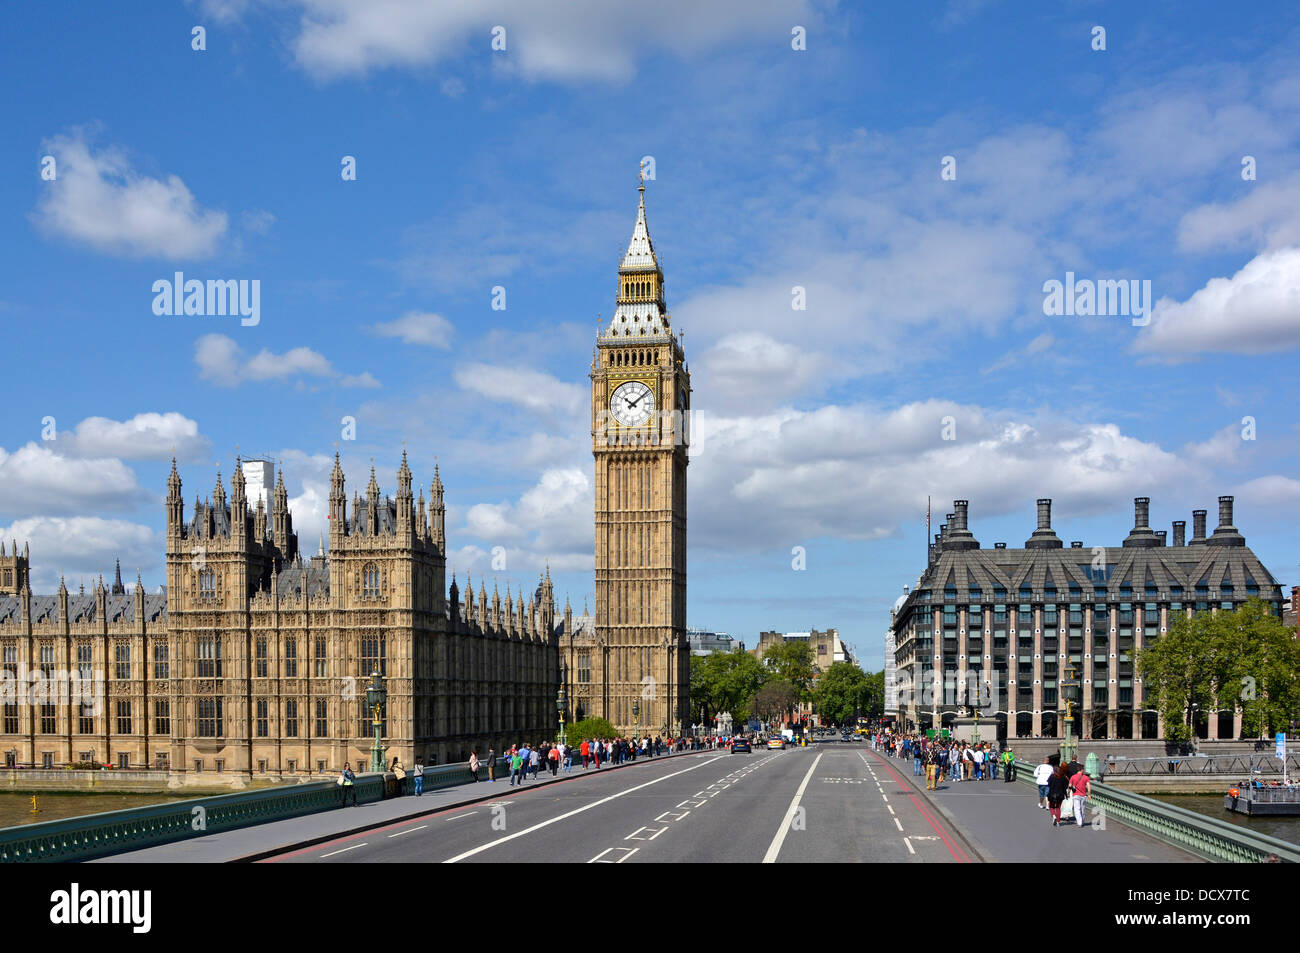 Historische Houses of Parliament mit Elizabeth Tower, Big Ben Uhrwand und modernem Portcullis House von der Westminster Bridge London England aus gesehen Stockfoto